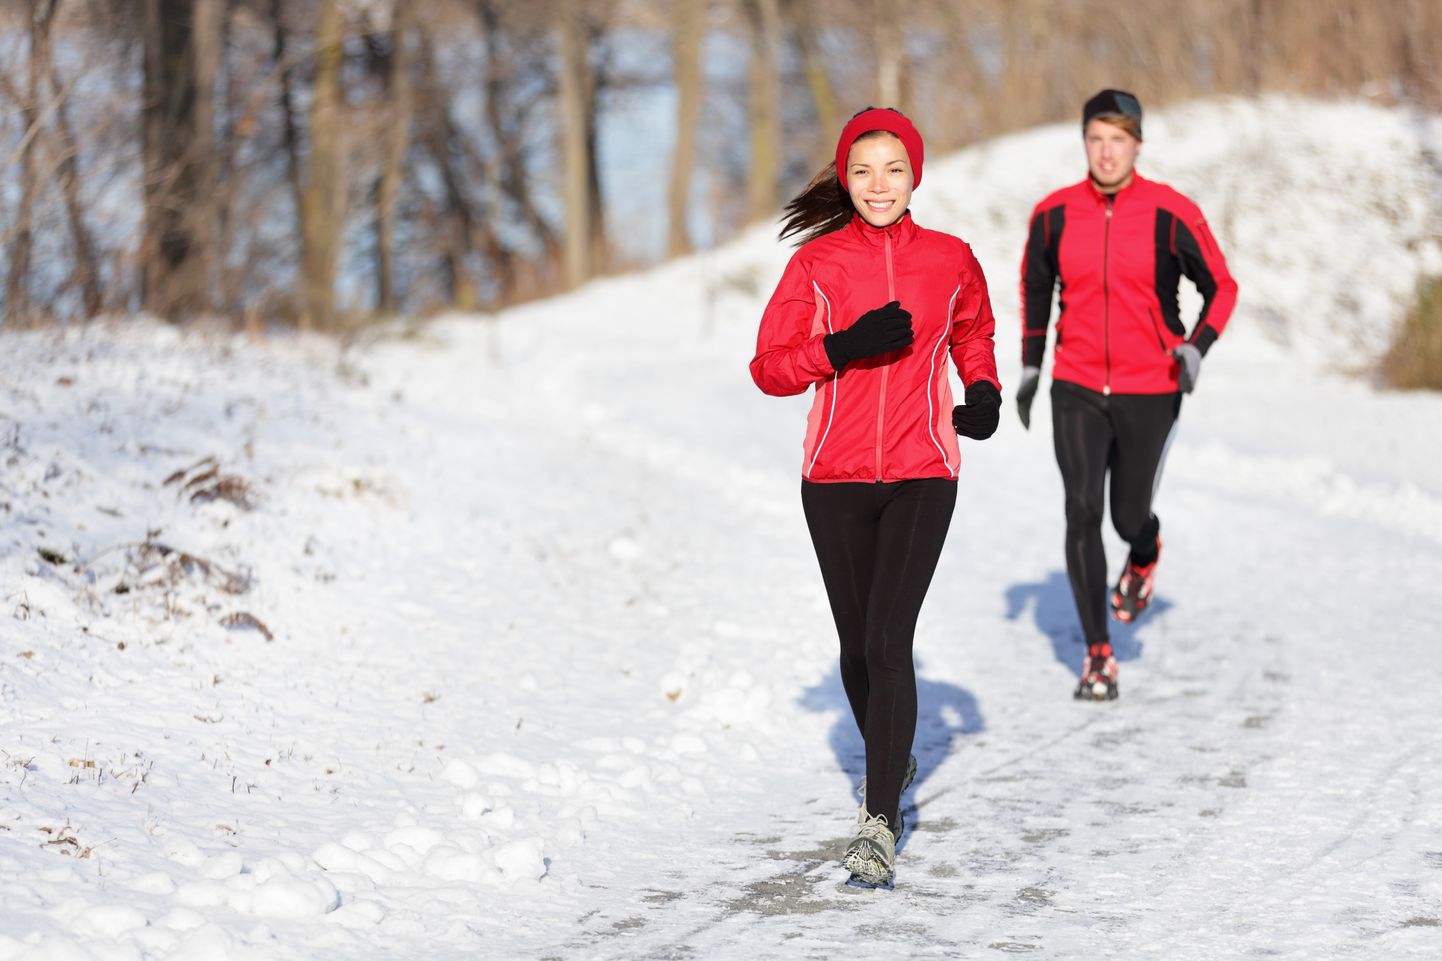 Külma ilmaga treenides tuleb alustada lihaste soojendusest siseruumis.